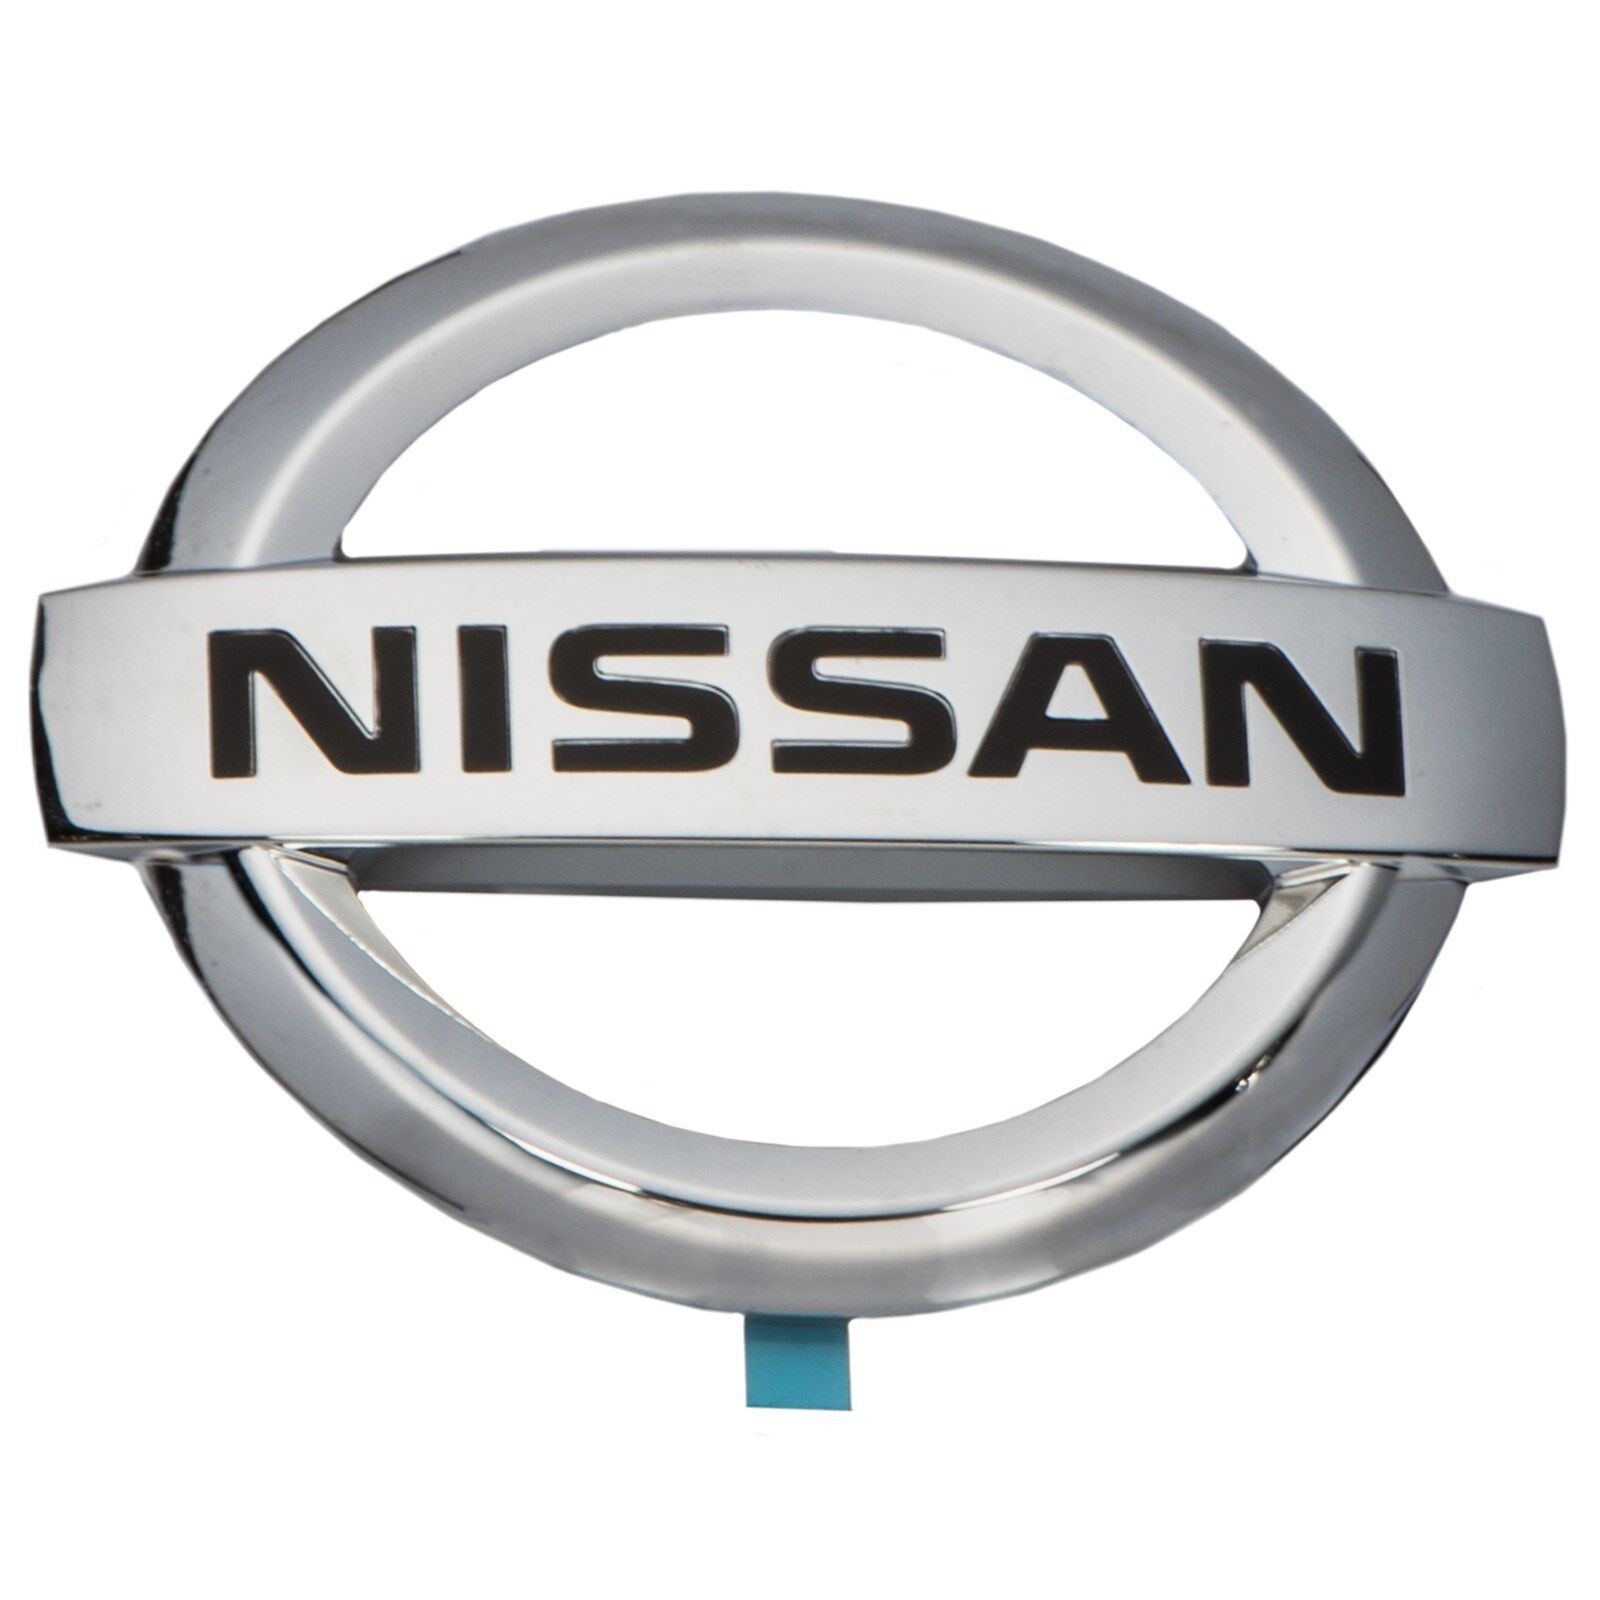 Nissan 350Z 370Z Front Chrome Grille Emblem Nameplate OEM NEW